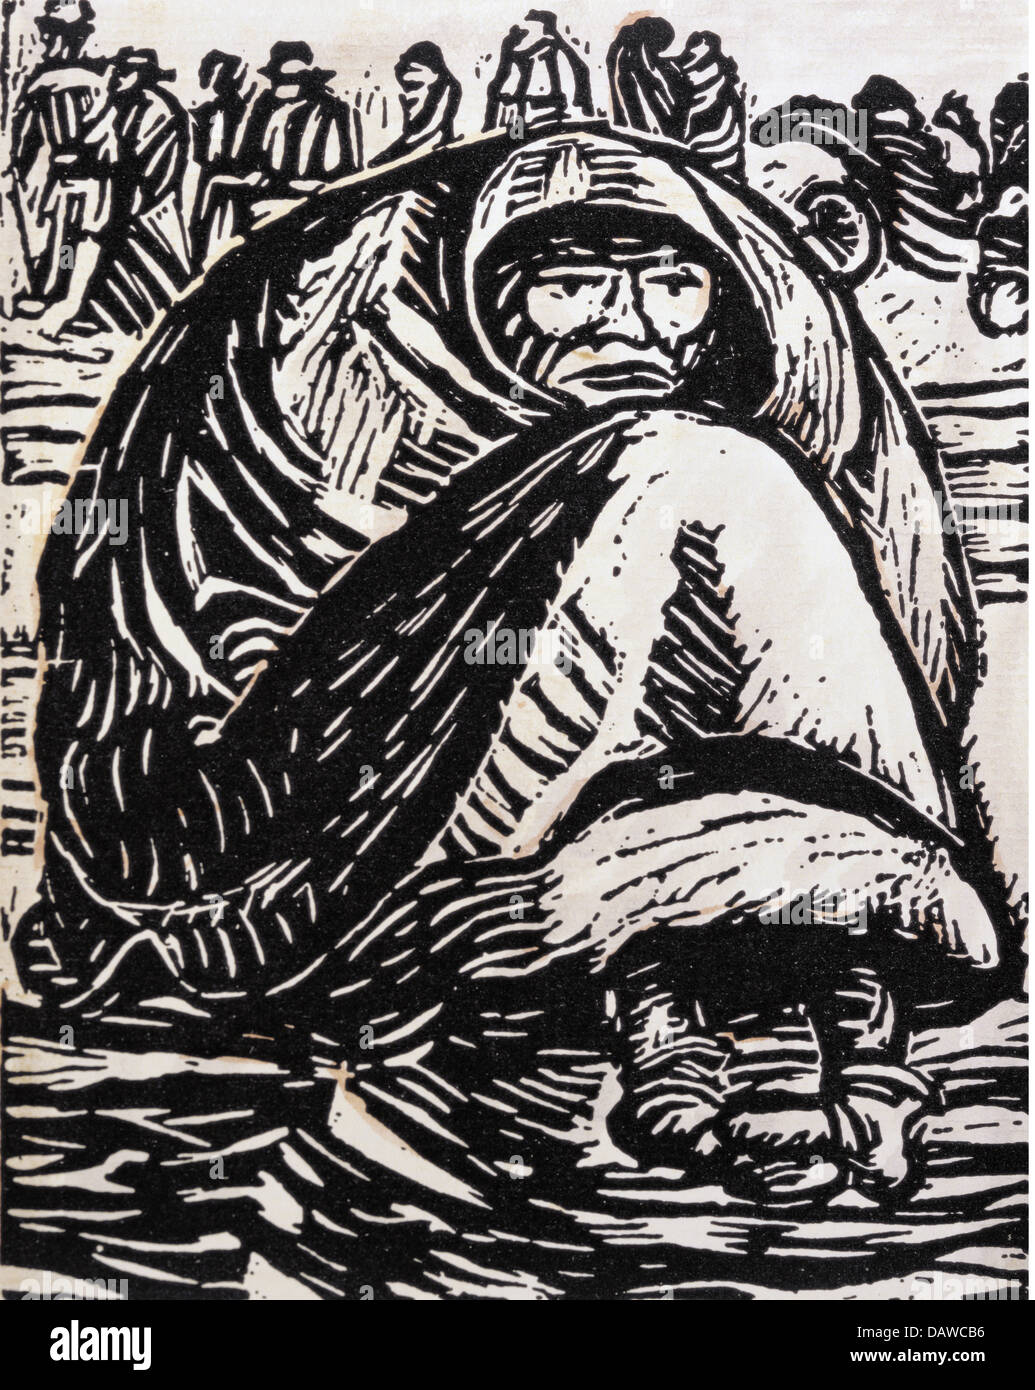 Bellas artes, Ernst Barlach (1870 - 1938), gráfico, 'Die Armut" (la miseria), xilografía, Alemania, 1918, colección privada, Foto de stock